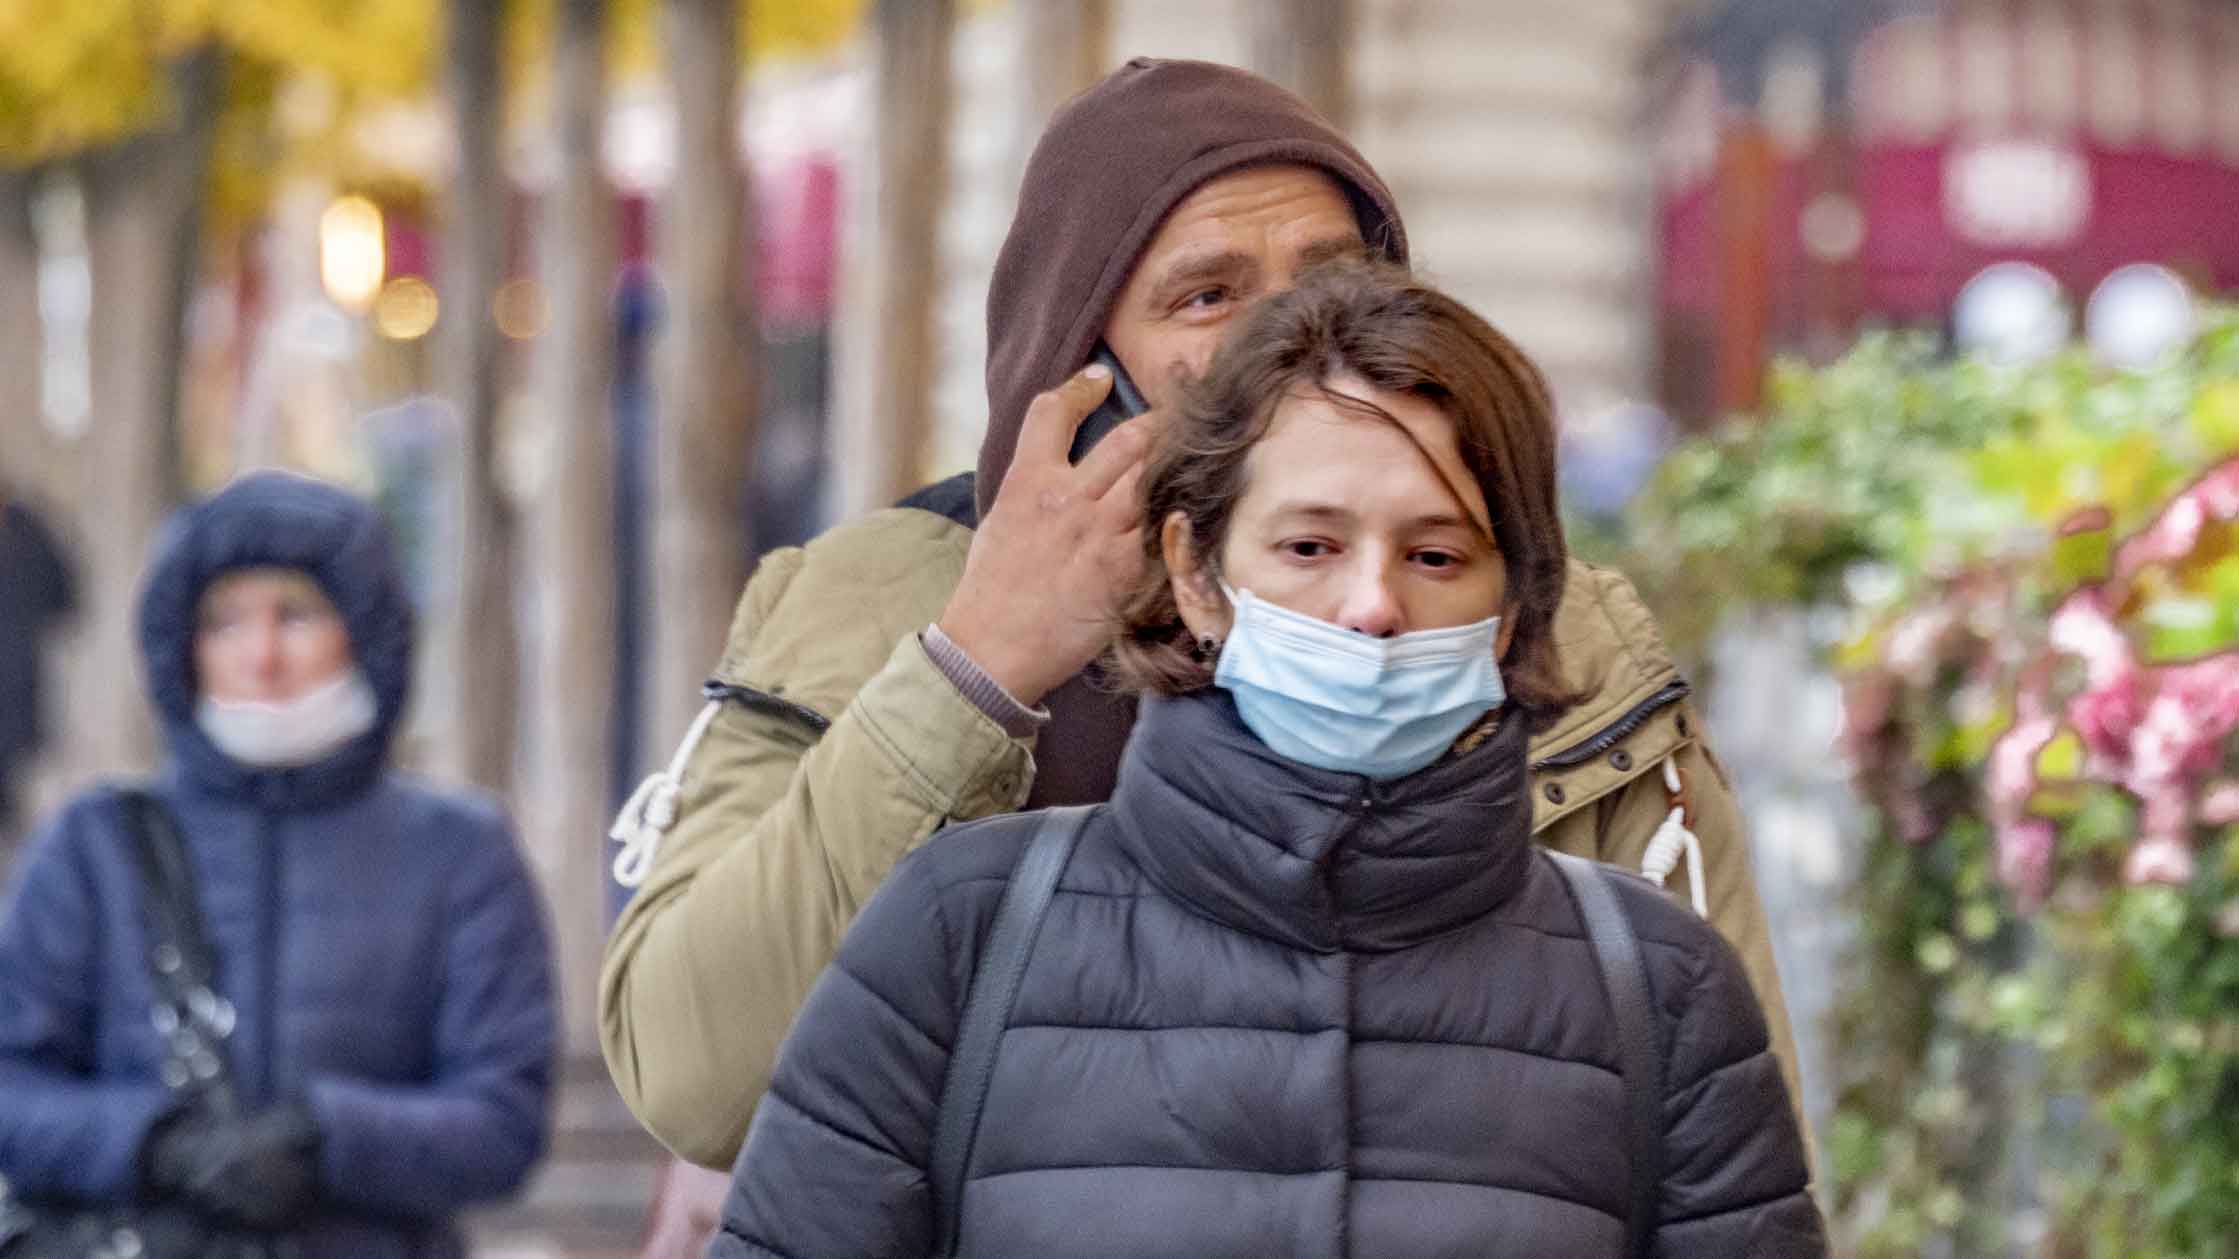 Пик эпидемии коронавирусной инфекции в стране еще не пройден, предупредили в ведомстве Фото: © GLOBAL LOOK press / Konstantin Kokoshkin